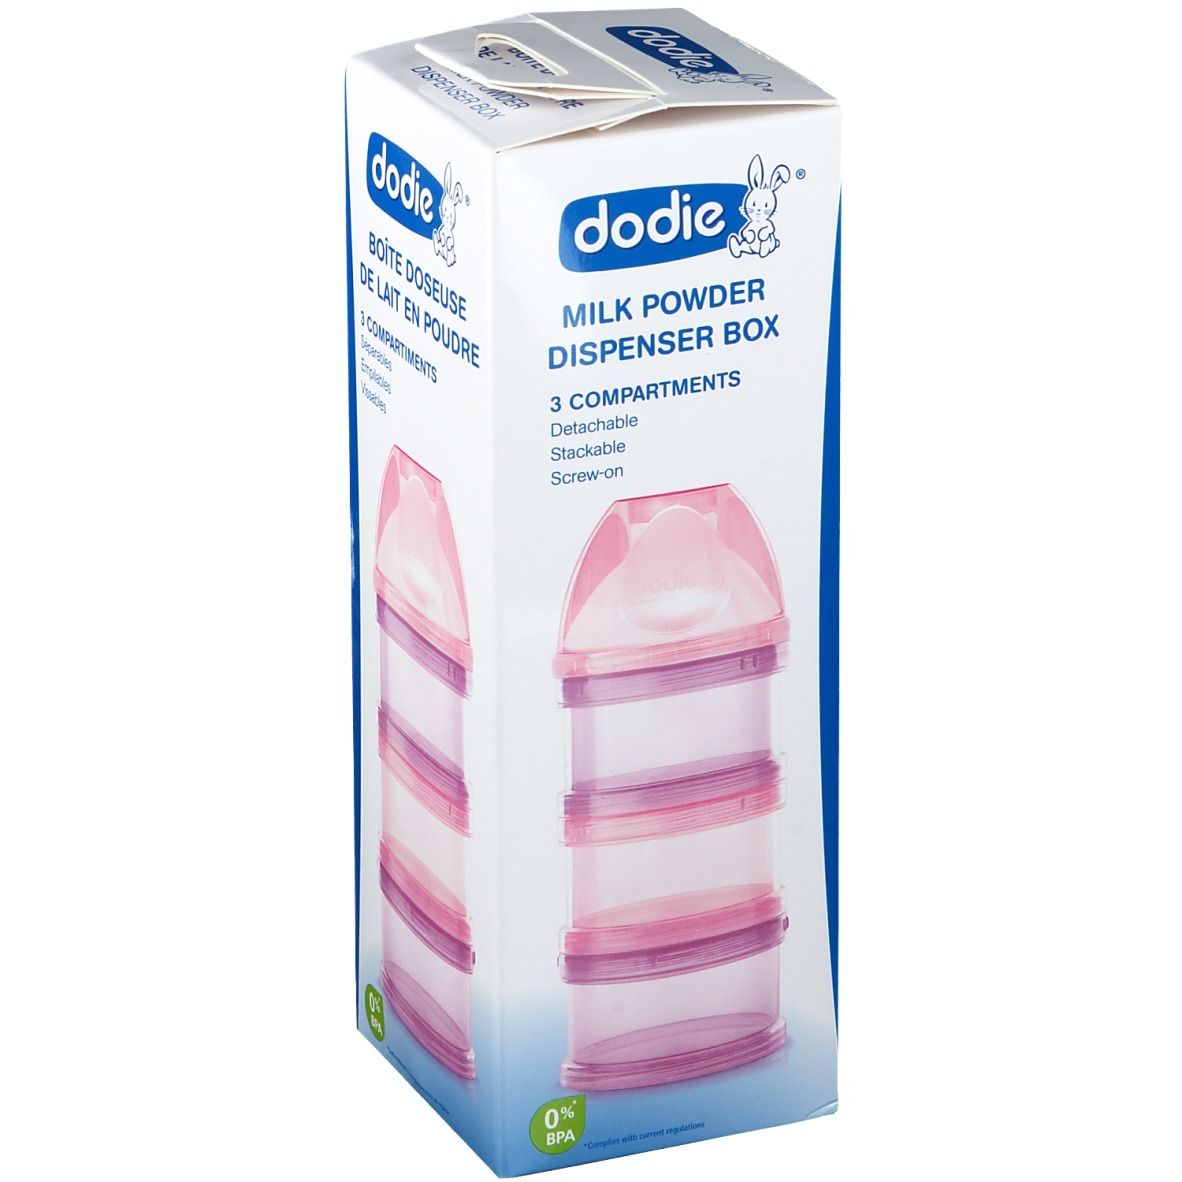 dodie® Boite doseuse de lait rose